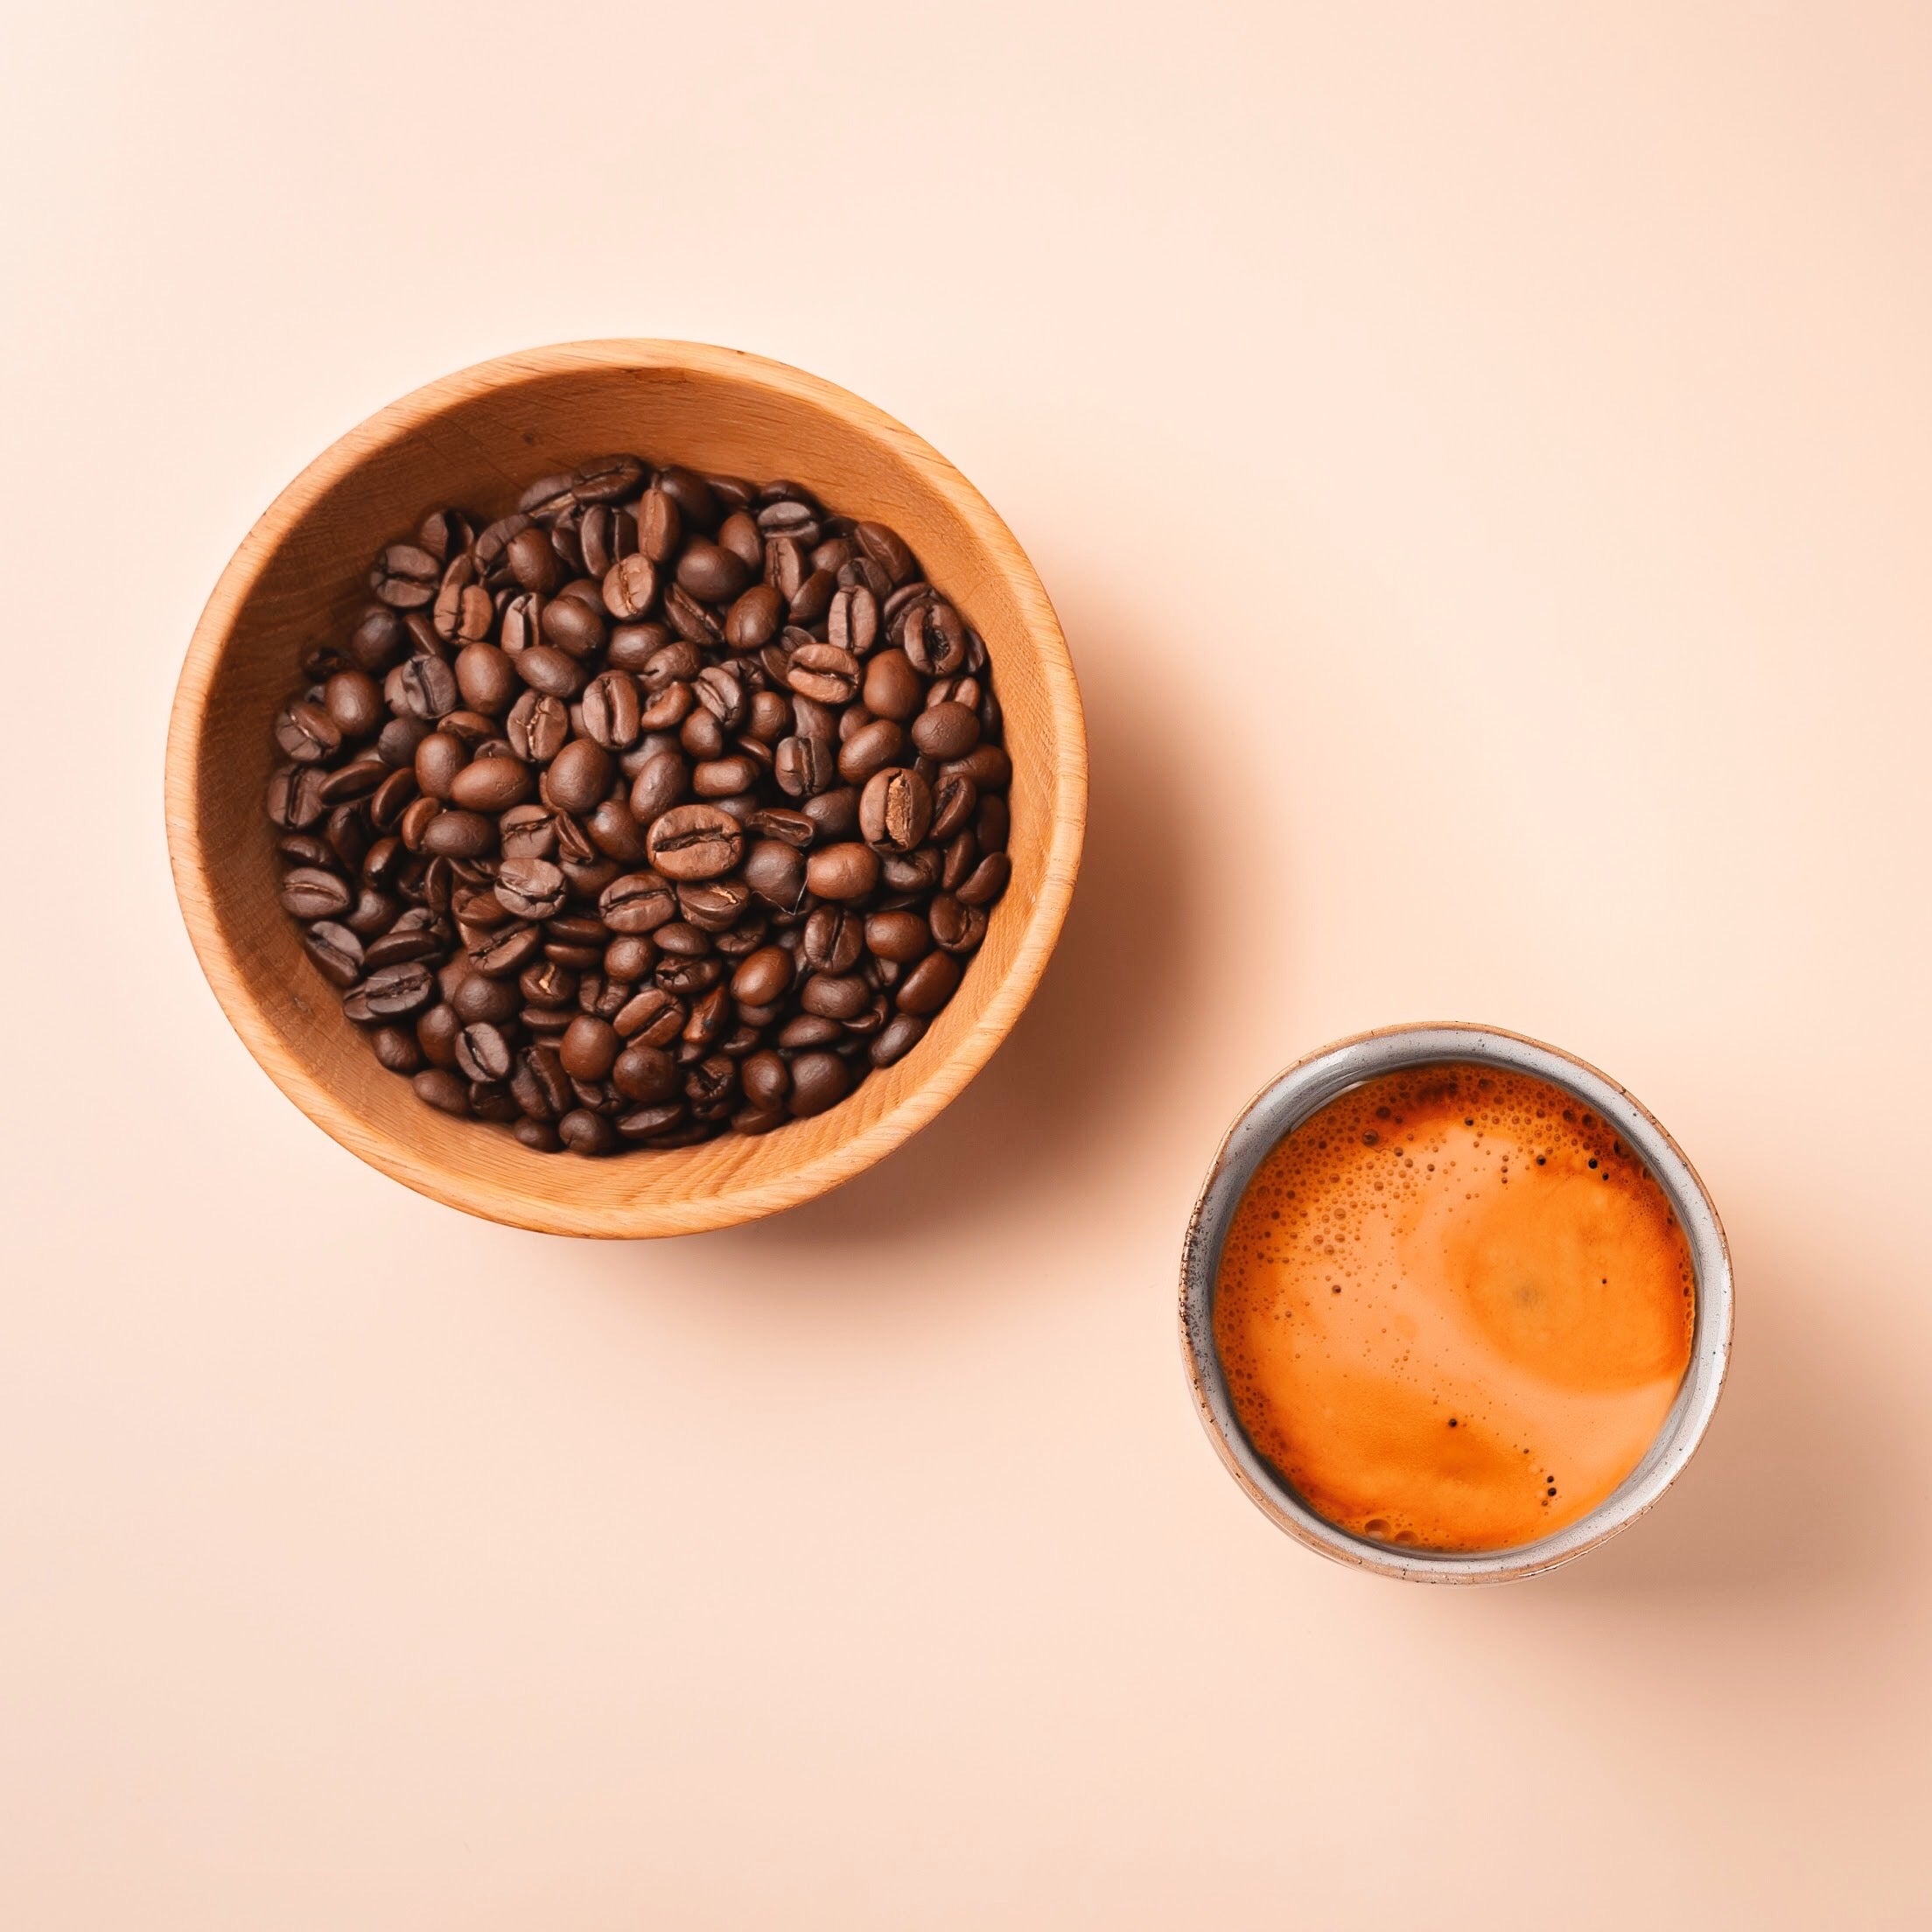  Bio-Kaffee aus fairem Handel und nachhaltig produziert in Äthiopien.